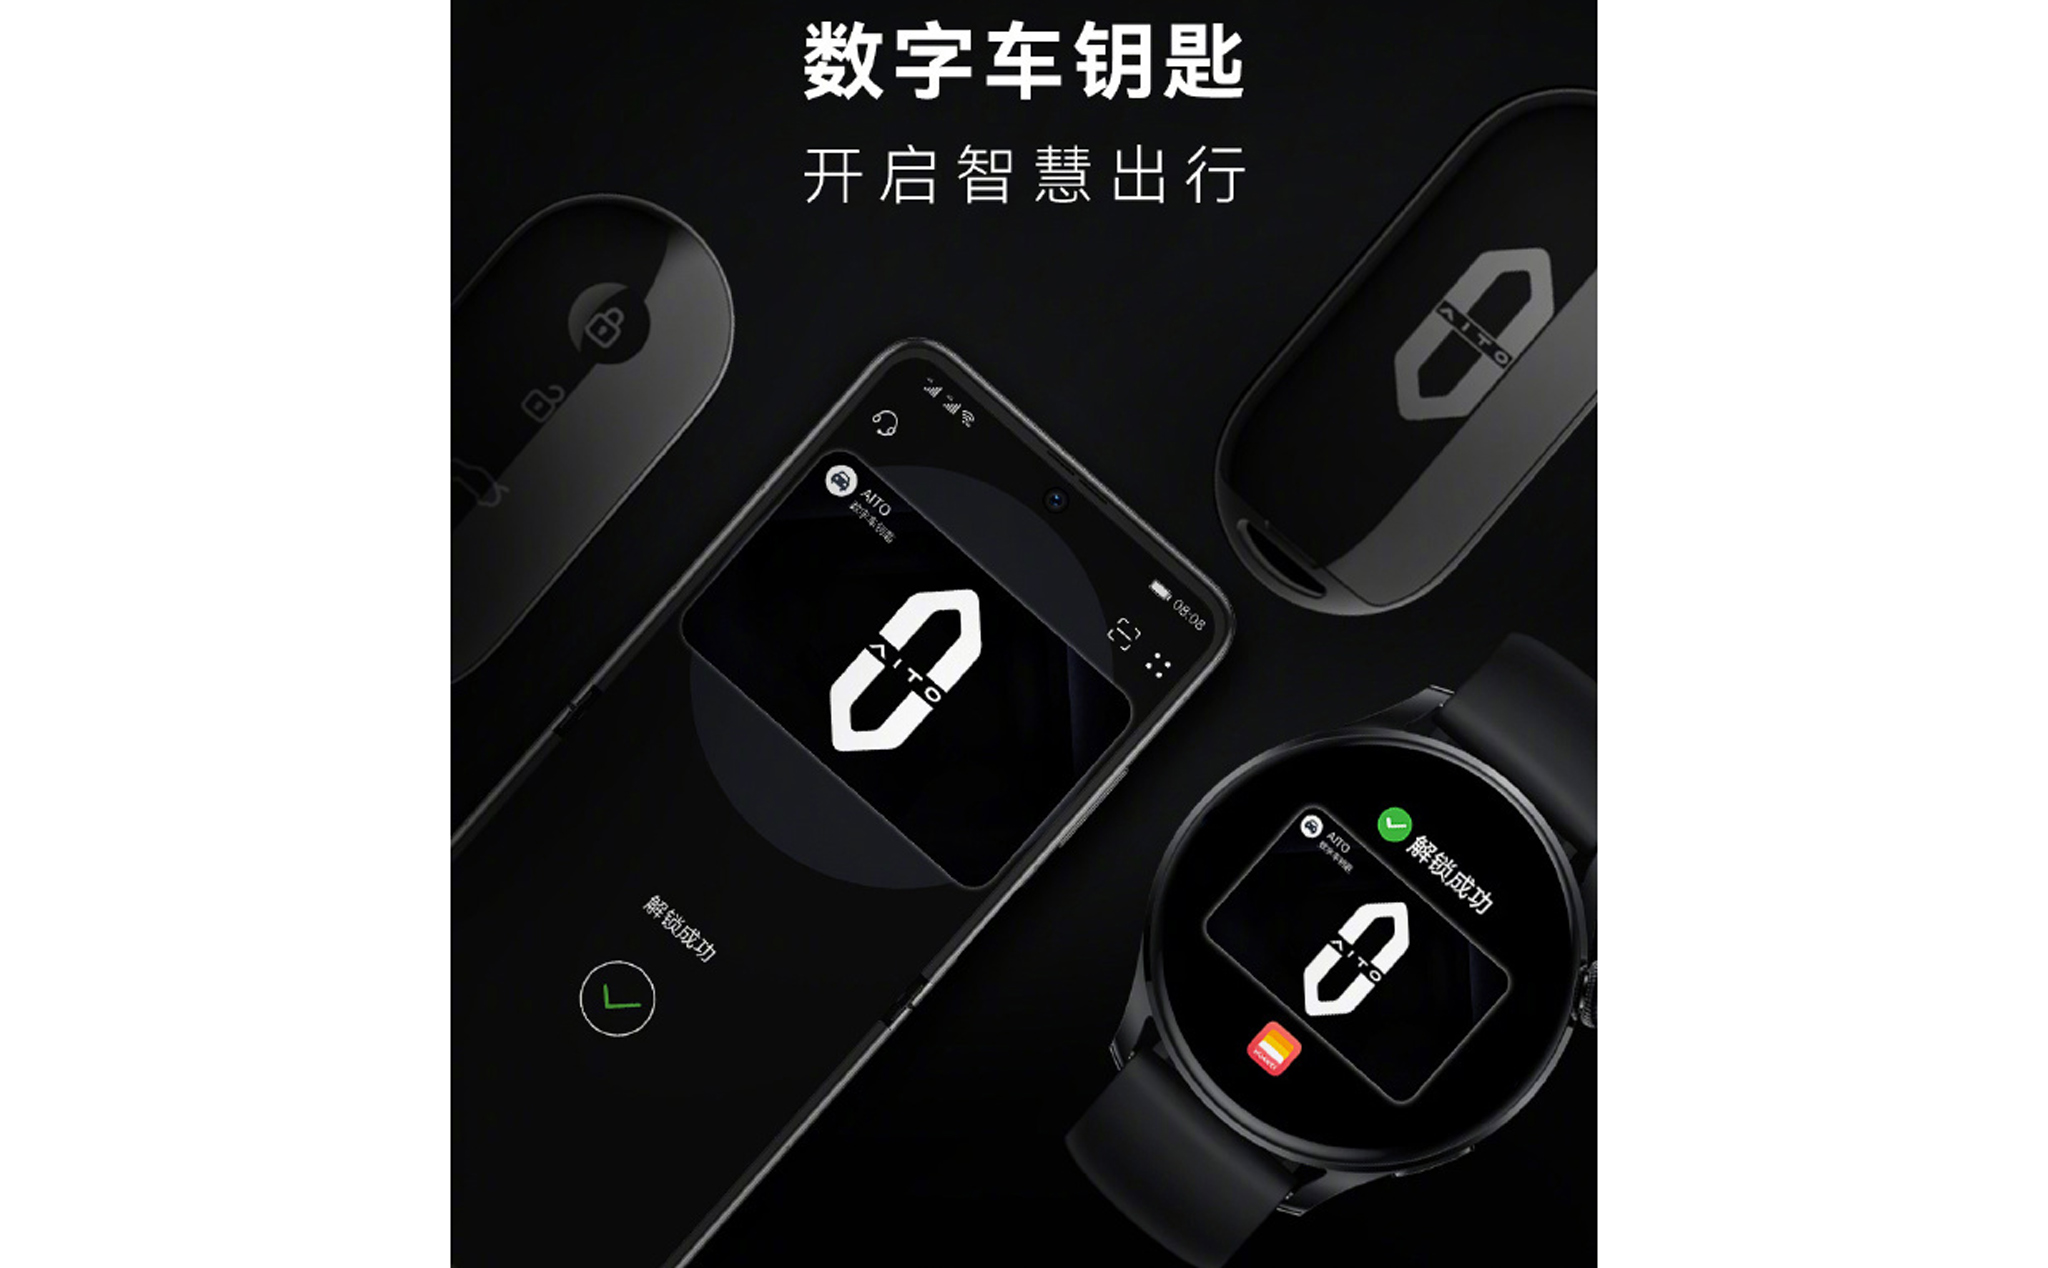 Huawei ra mắt “chìa khoá kỹ thuật số” cho xe AITO M5 của mình